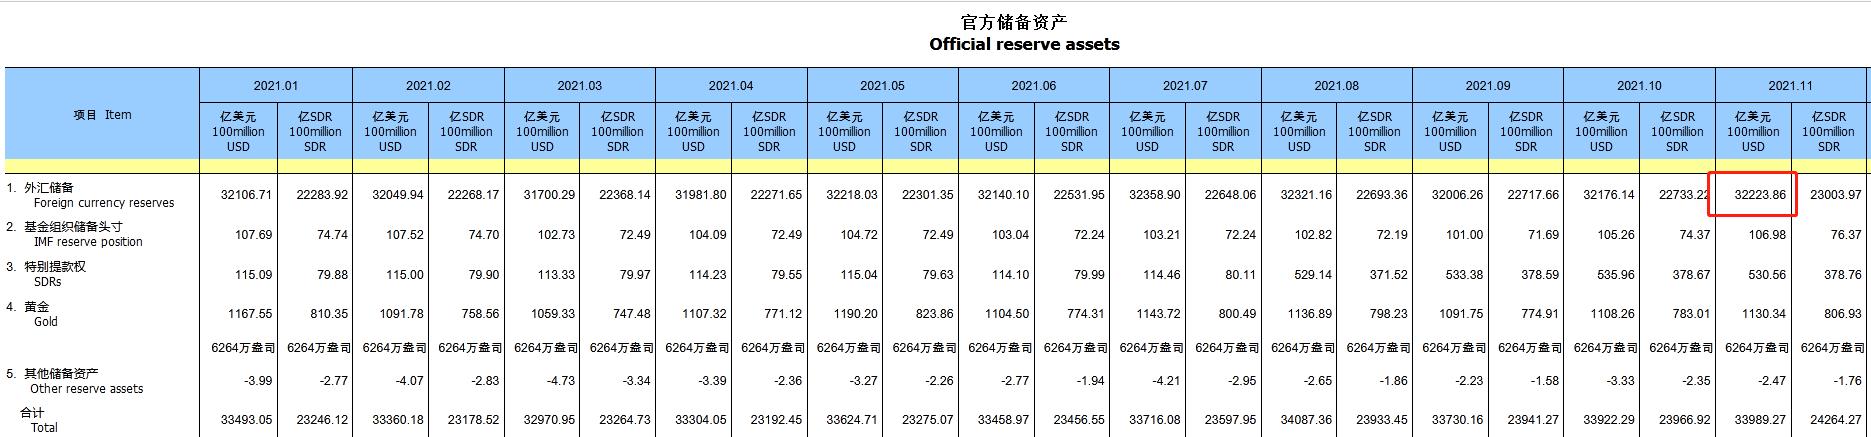 中国11月末外汇储备32224亿美元 国家外汇局解读